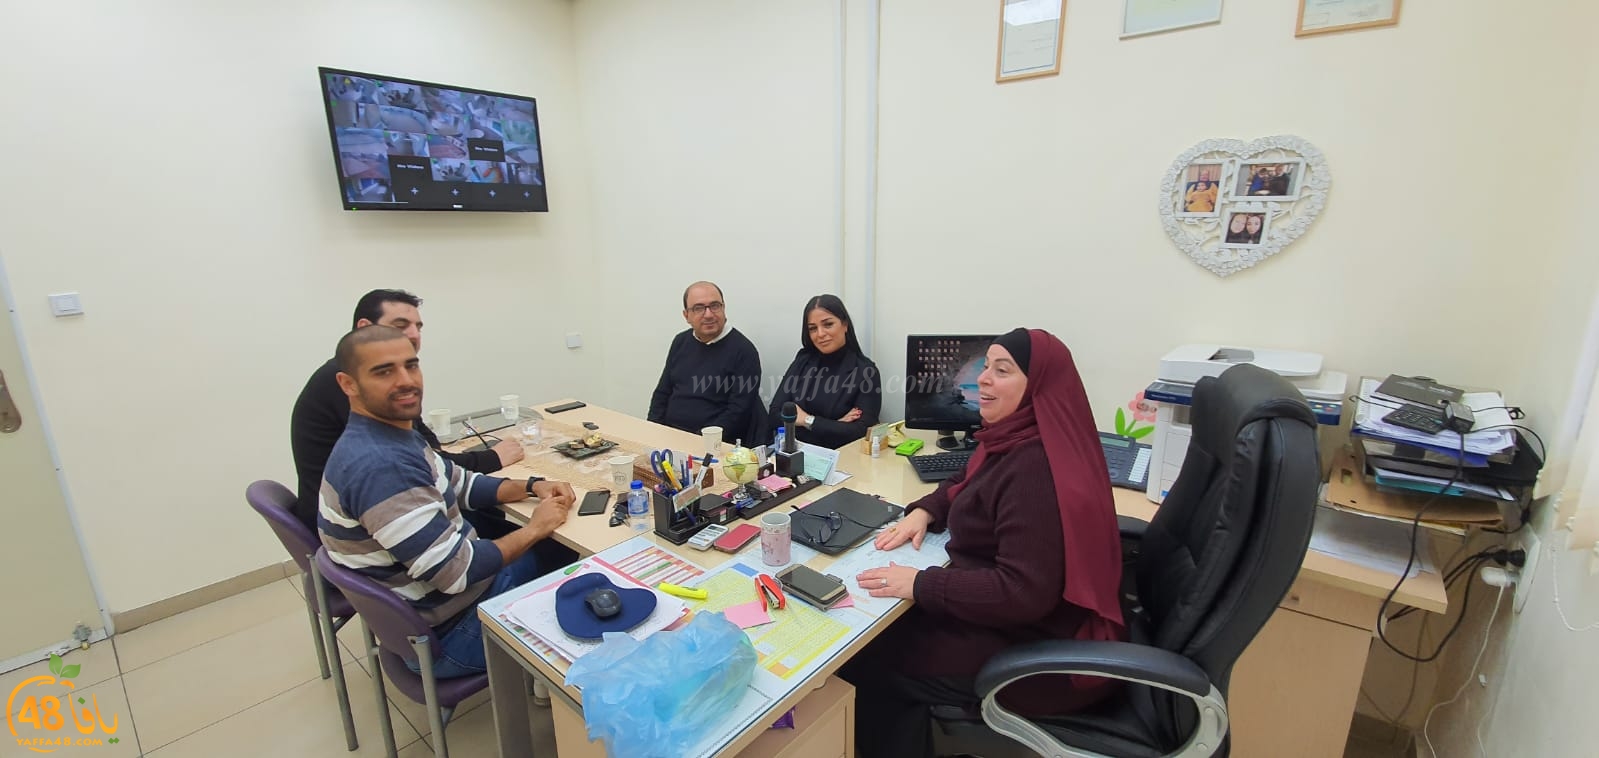 يافا: بيان لجنة اولياء امور طلاب مدرسة أجيال الابتدائية حول بناء المدرسة الجديدة